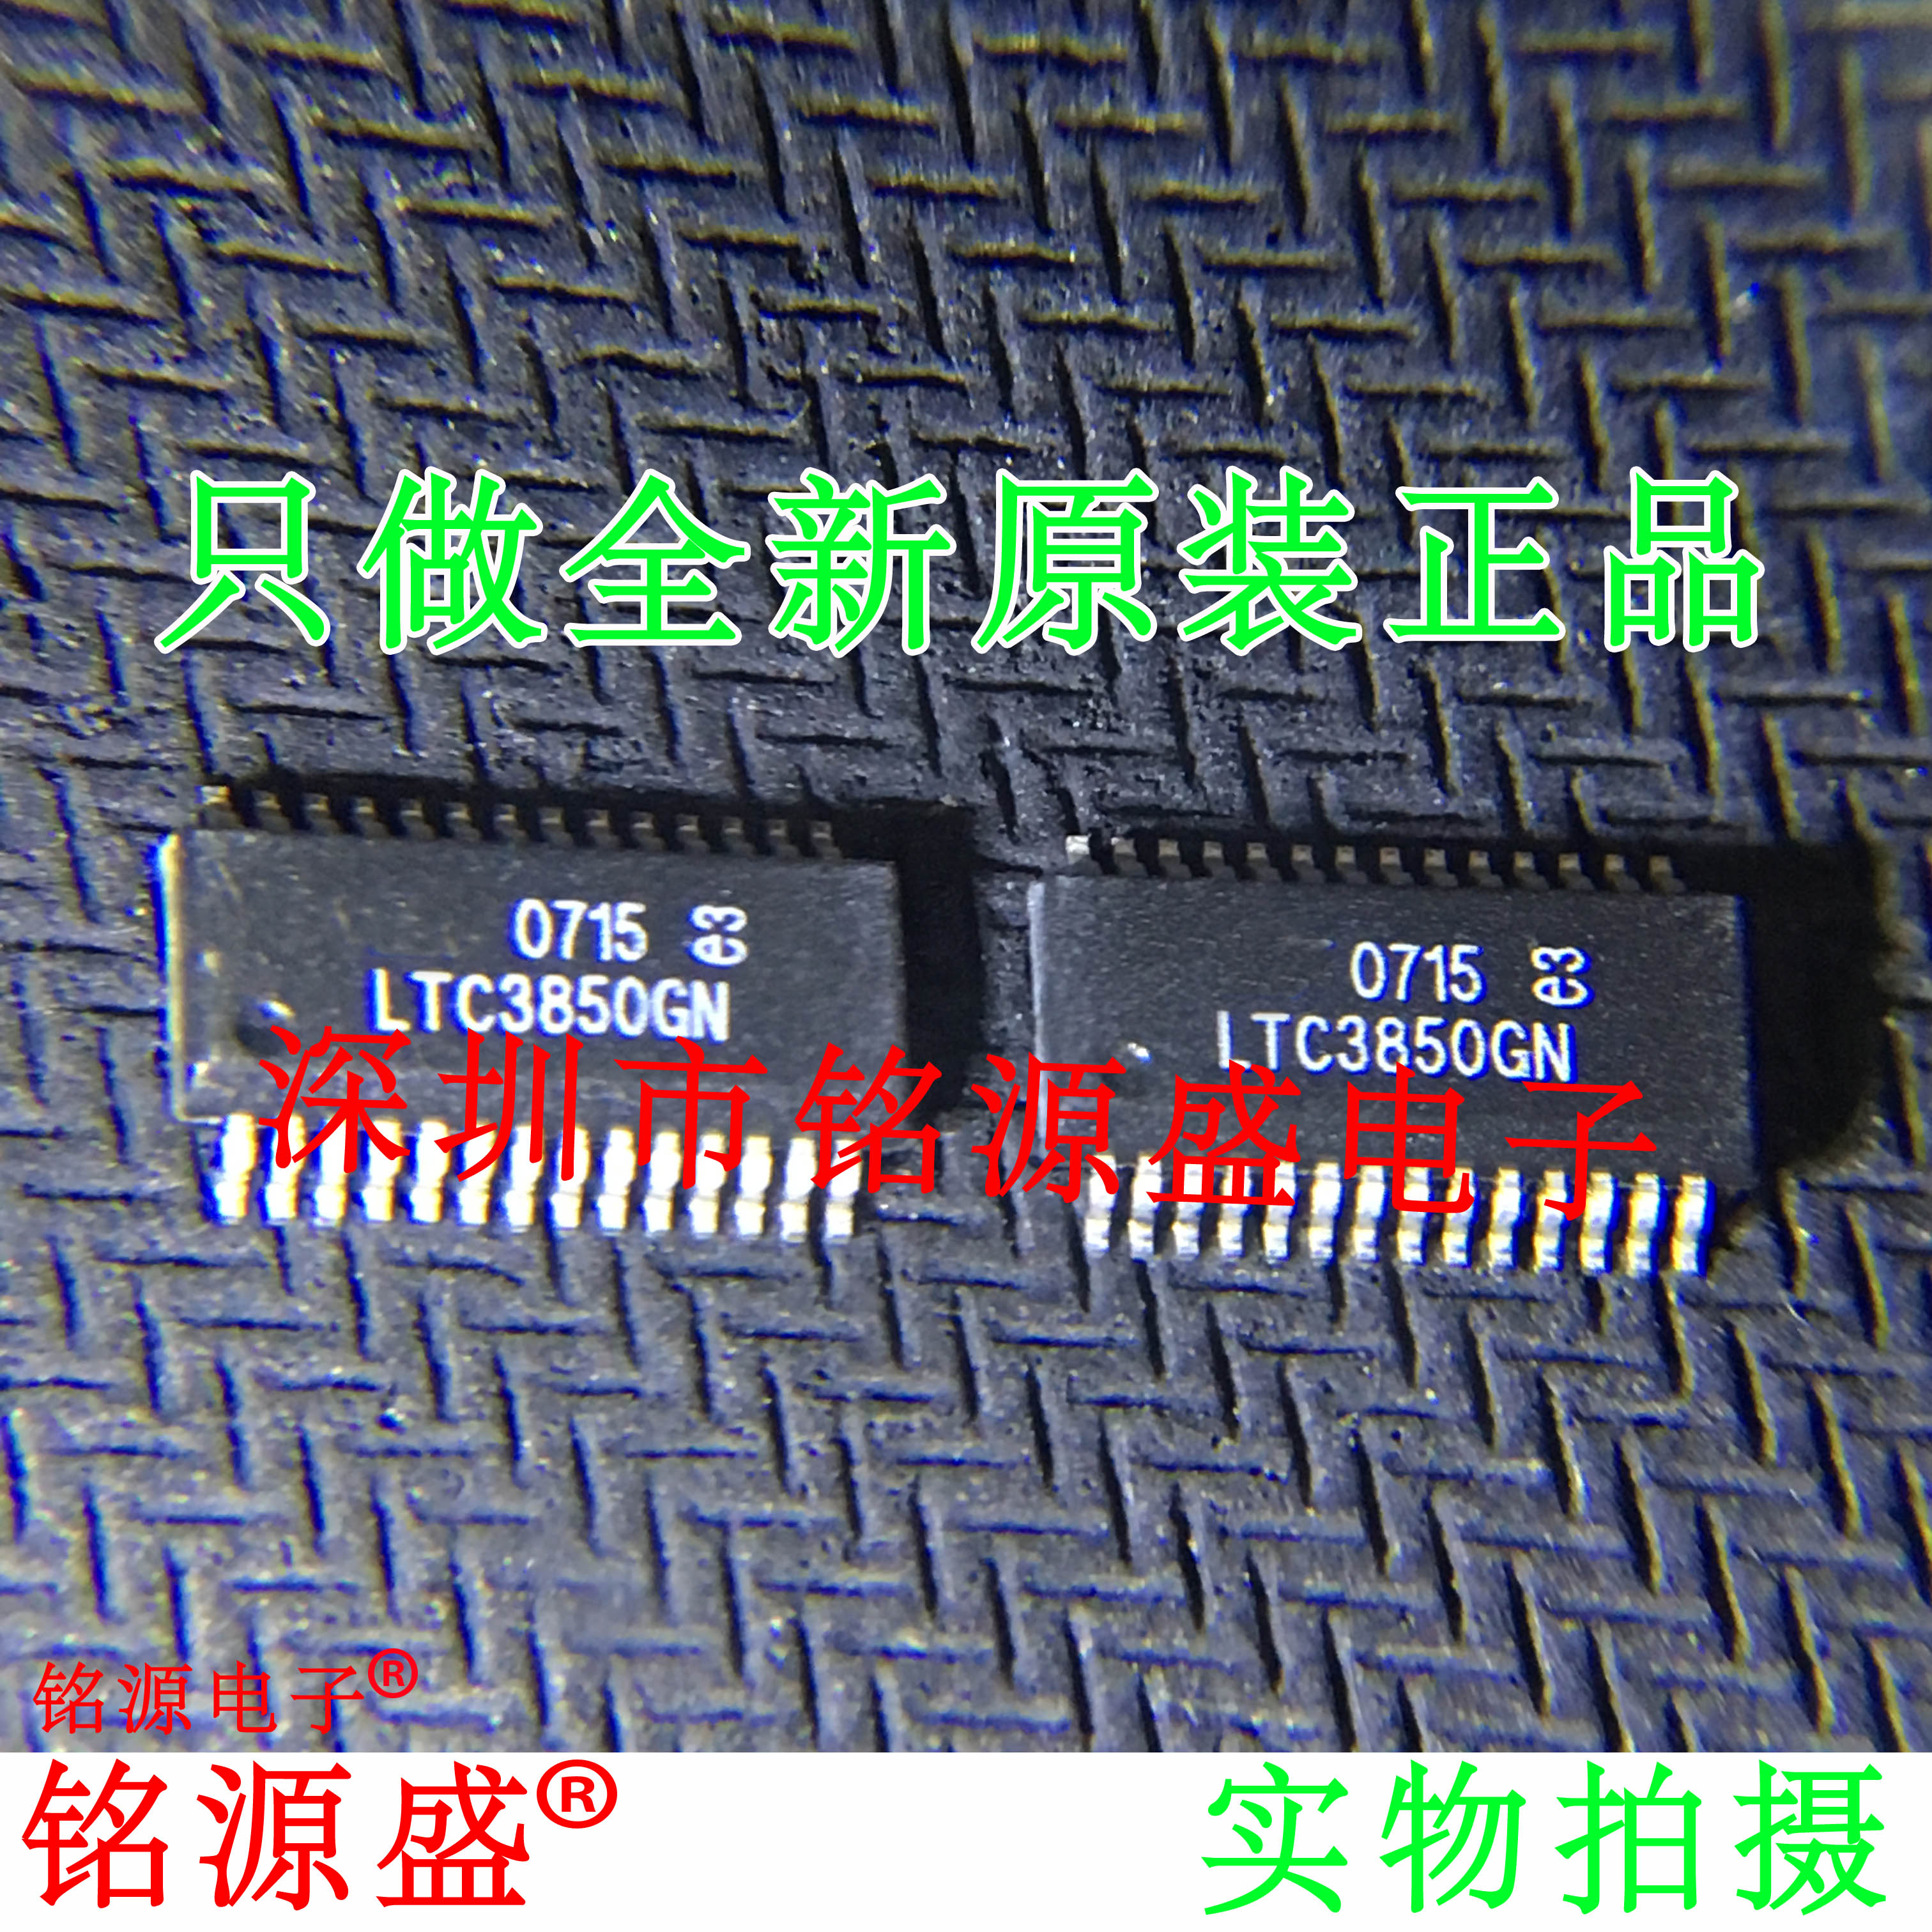 铭源盛全新原装正品 LTC3850GN LTC3850 SSOP28电压控制器芯片